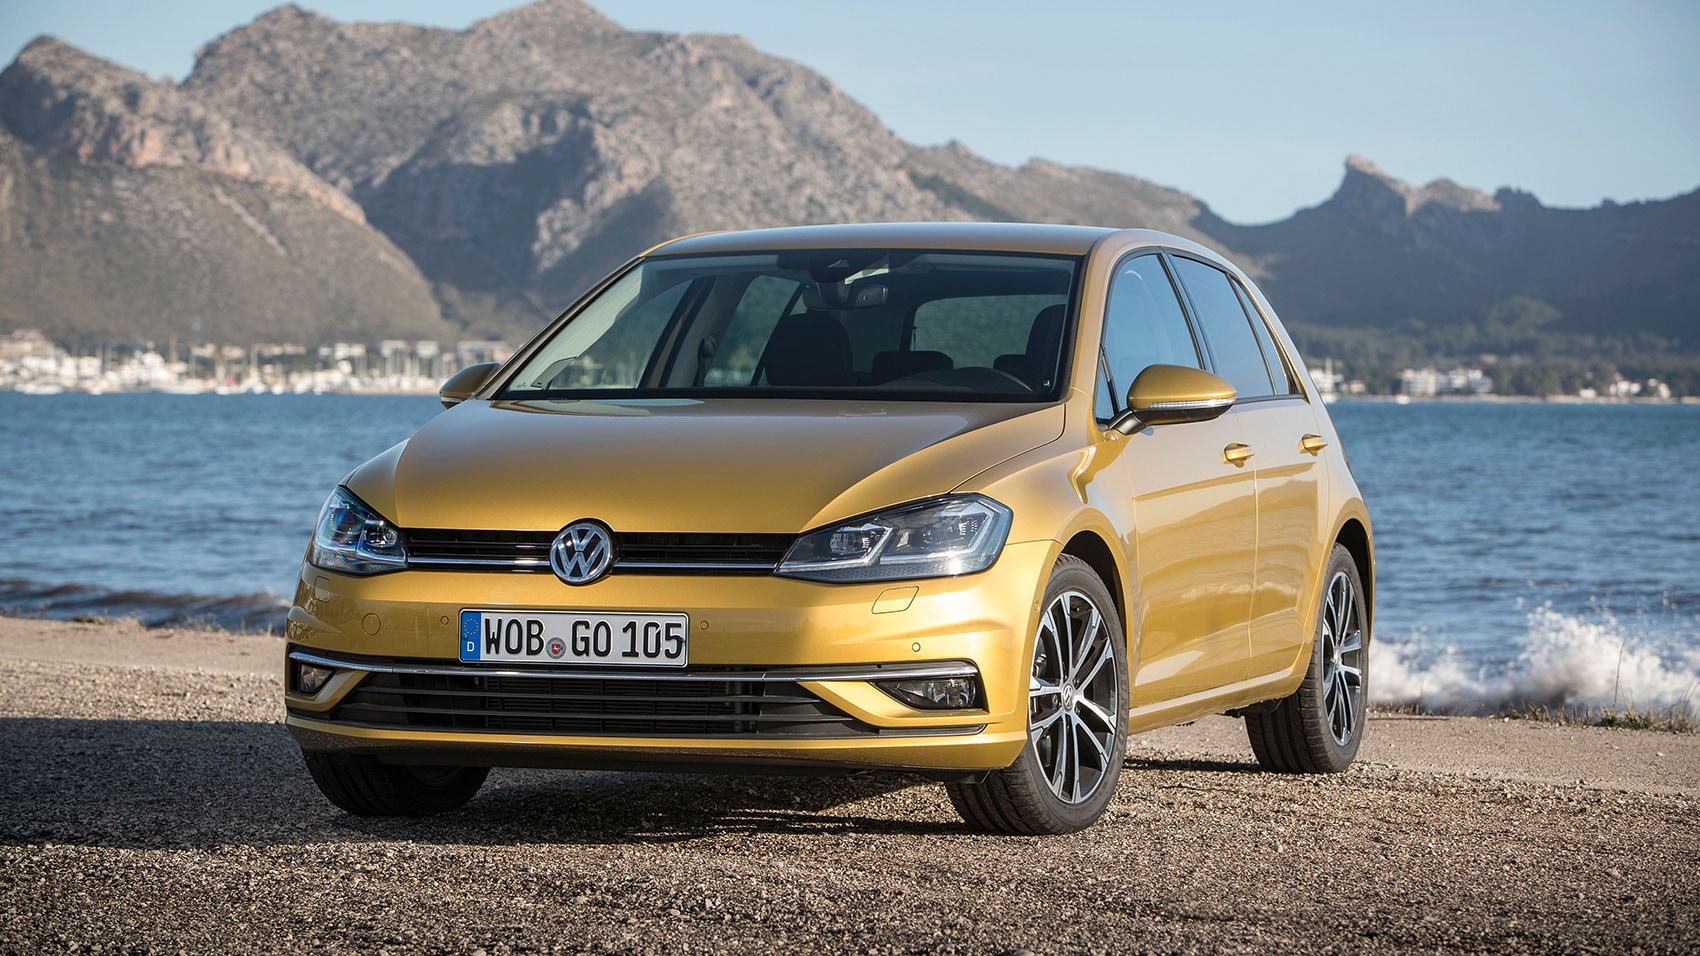 Volkswagen Golf: Safety First